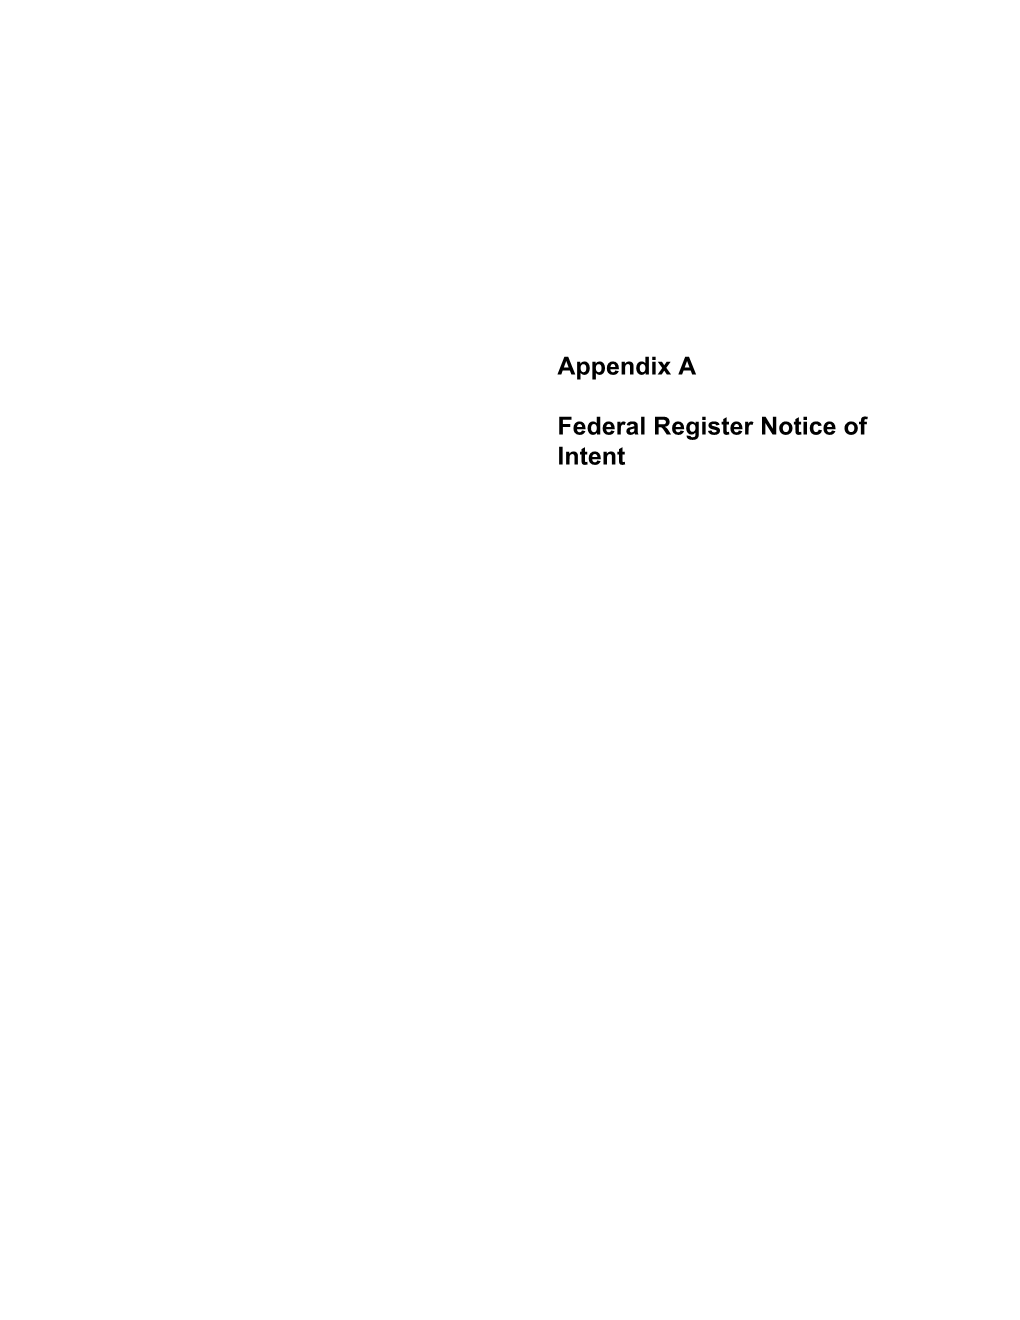 Appendix a Federal Register Notice of Intent